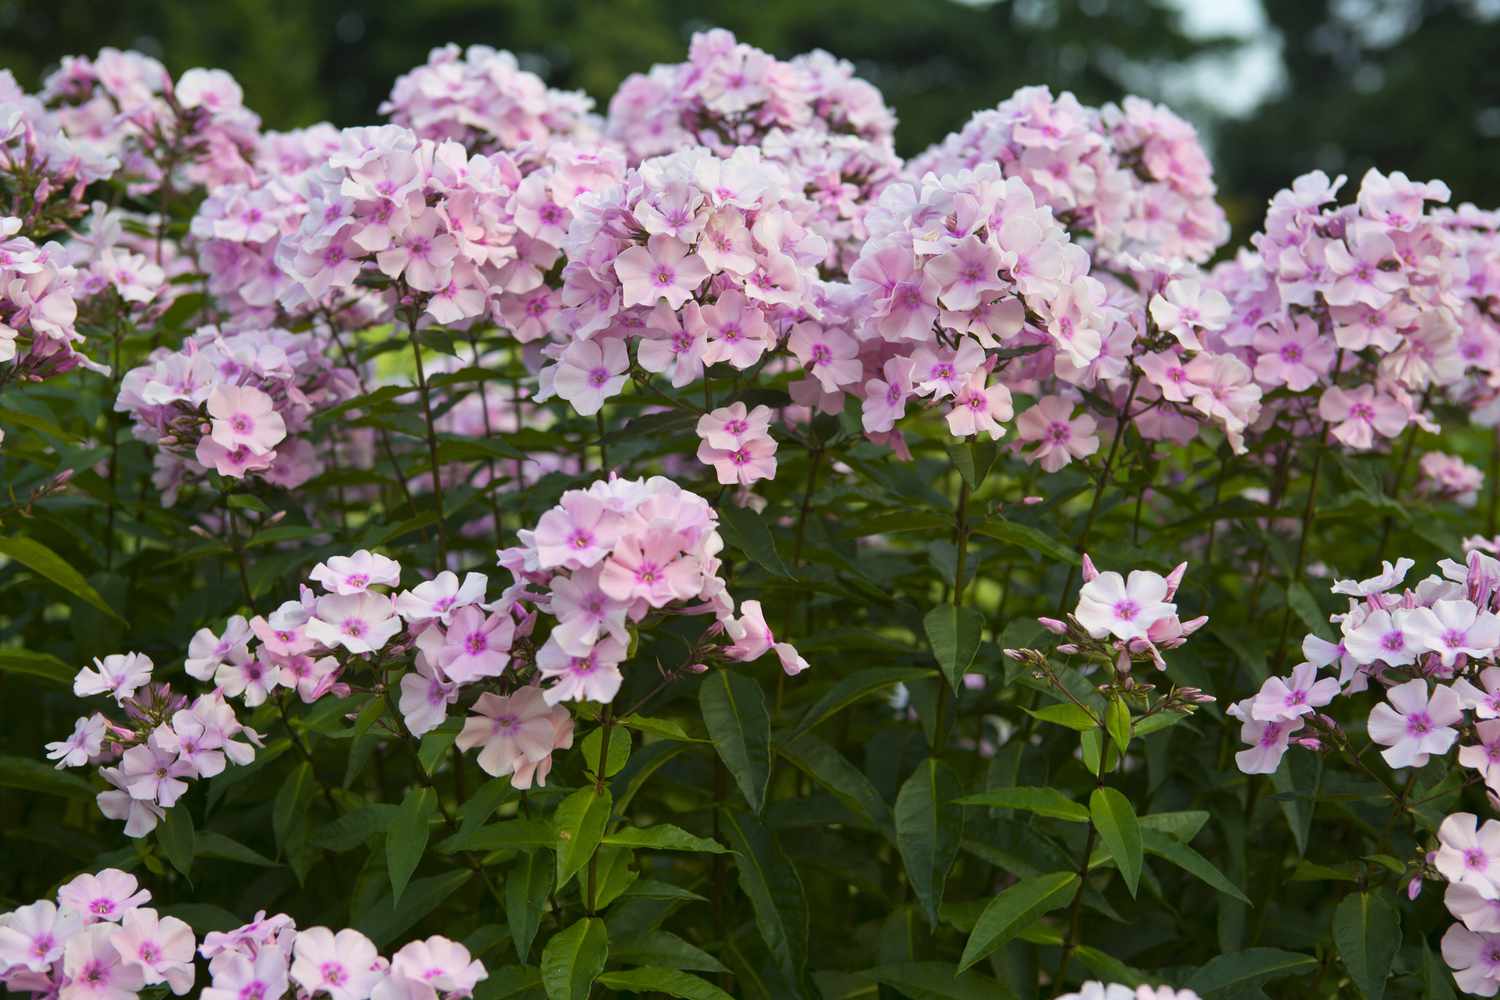 Varias plantas de phlox de jardín alto 'Rosa Pastell' creciendo juntas.